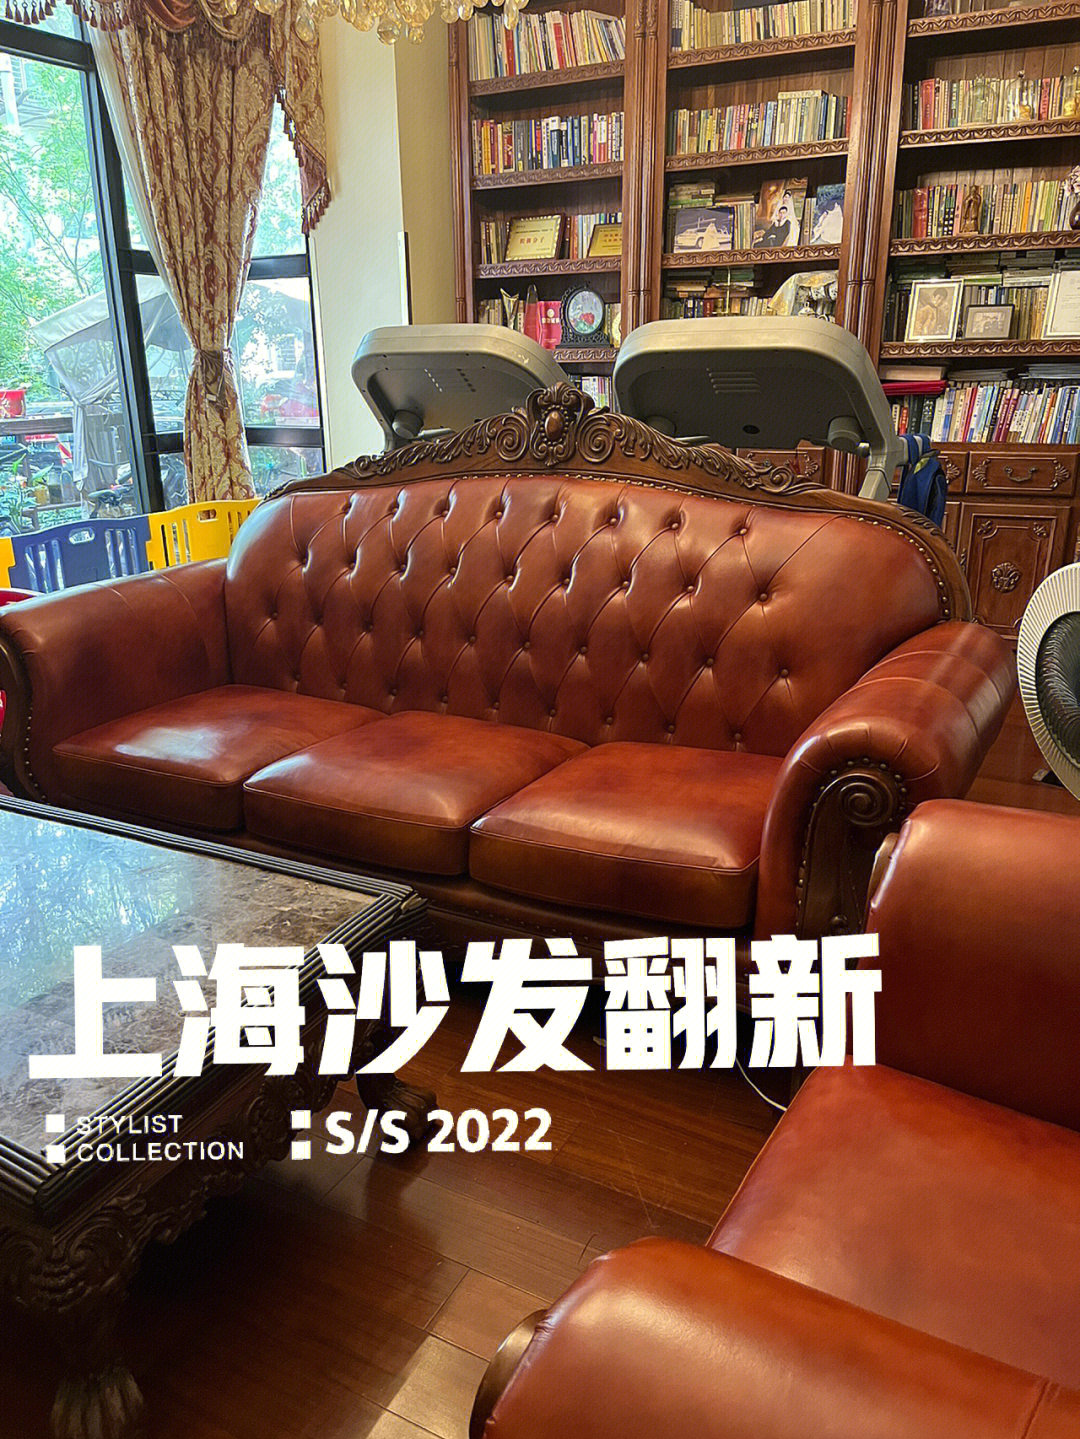 上海别墅里欧式沙发坏了还可以翻新吗